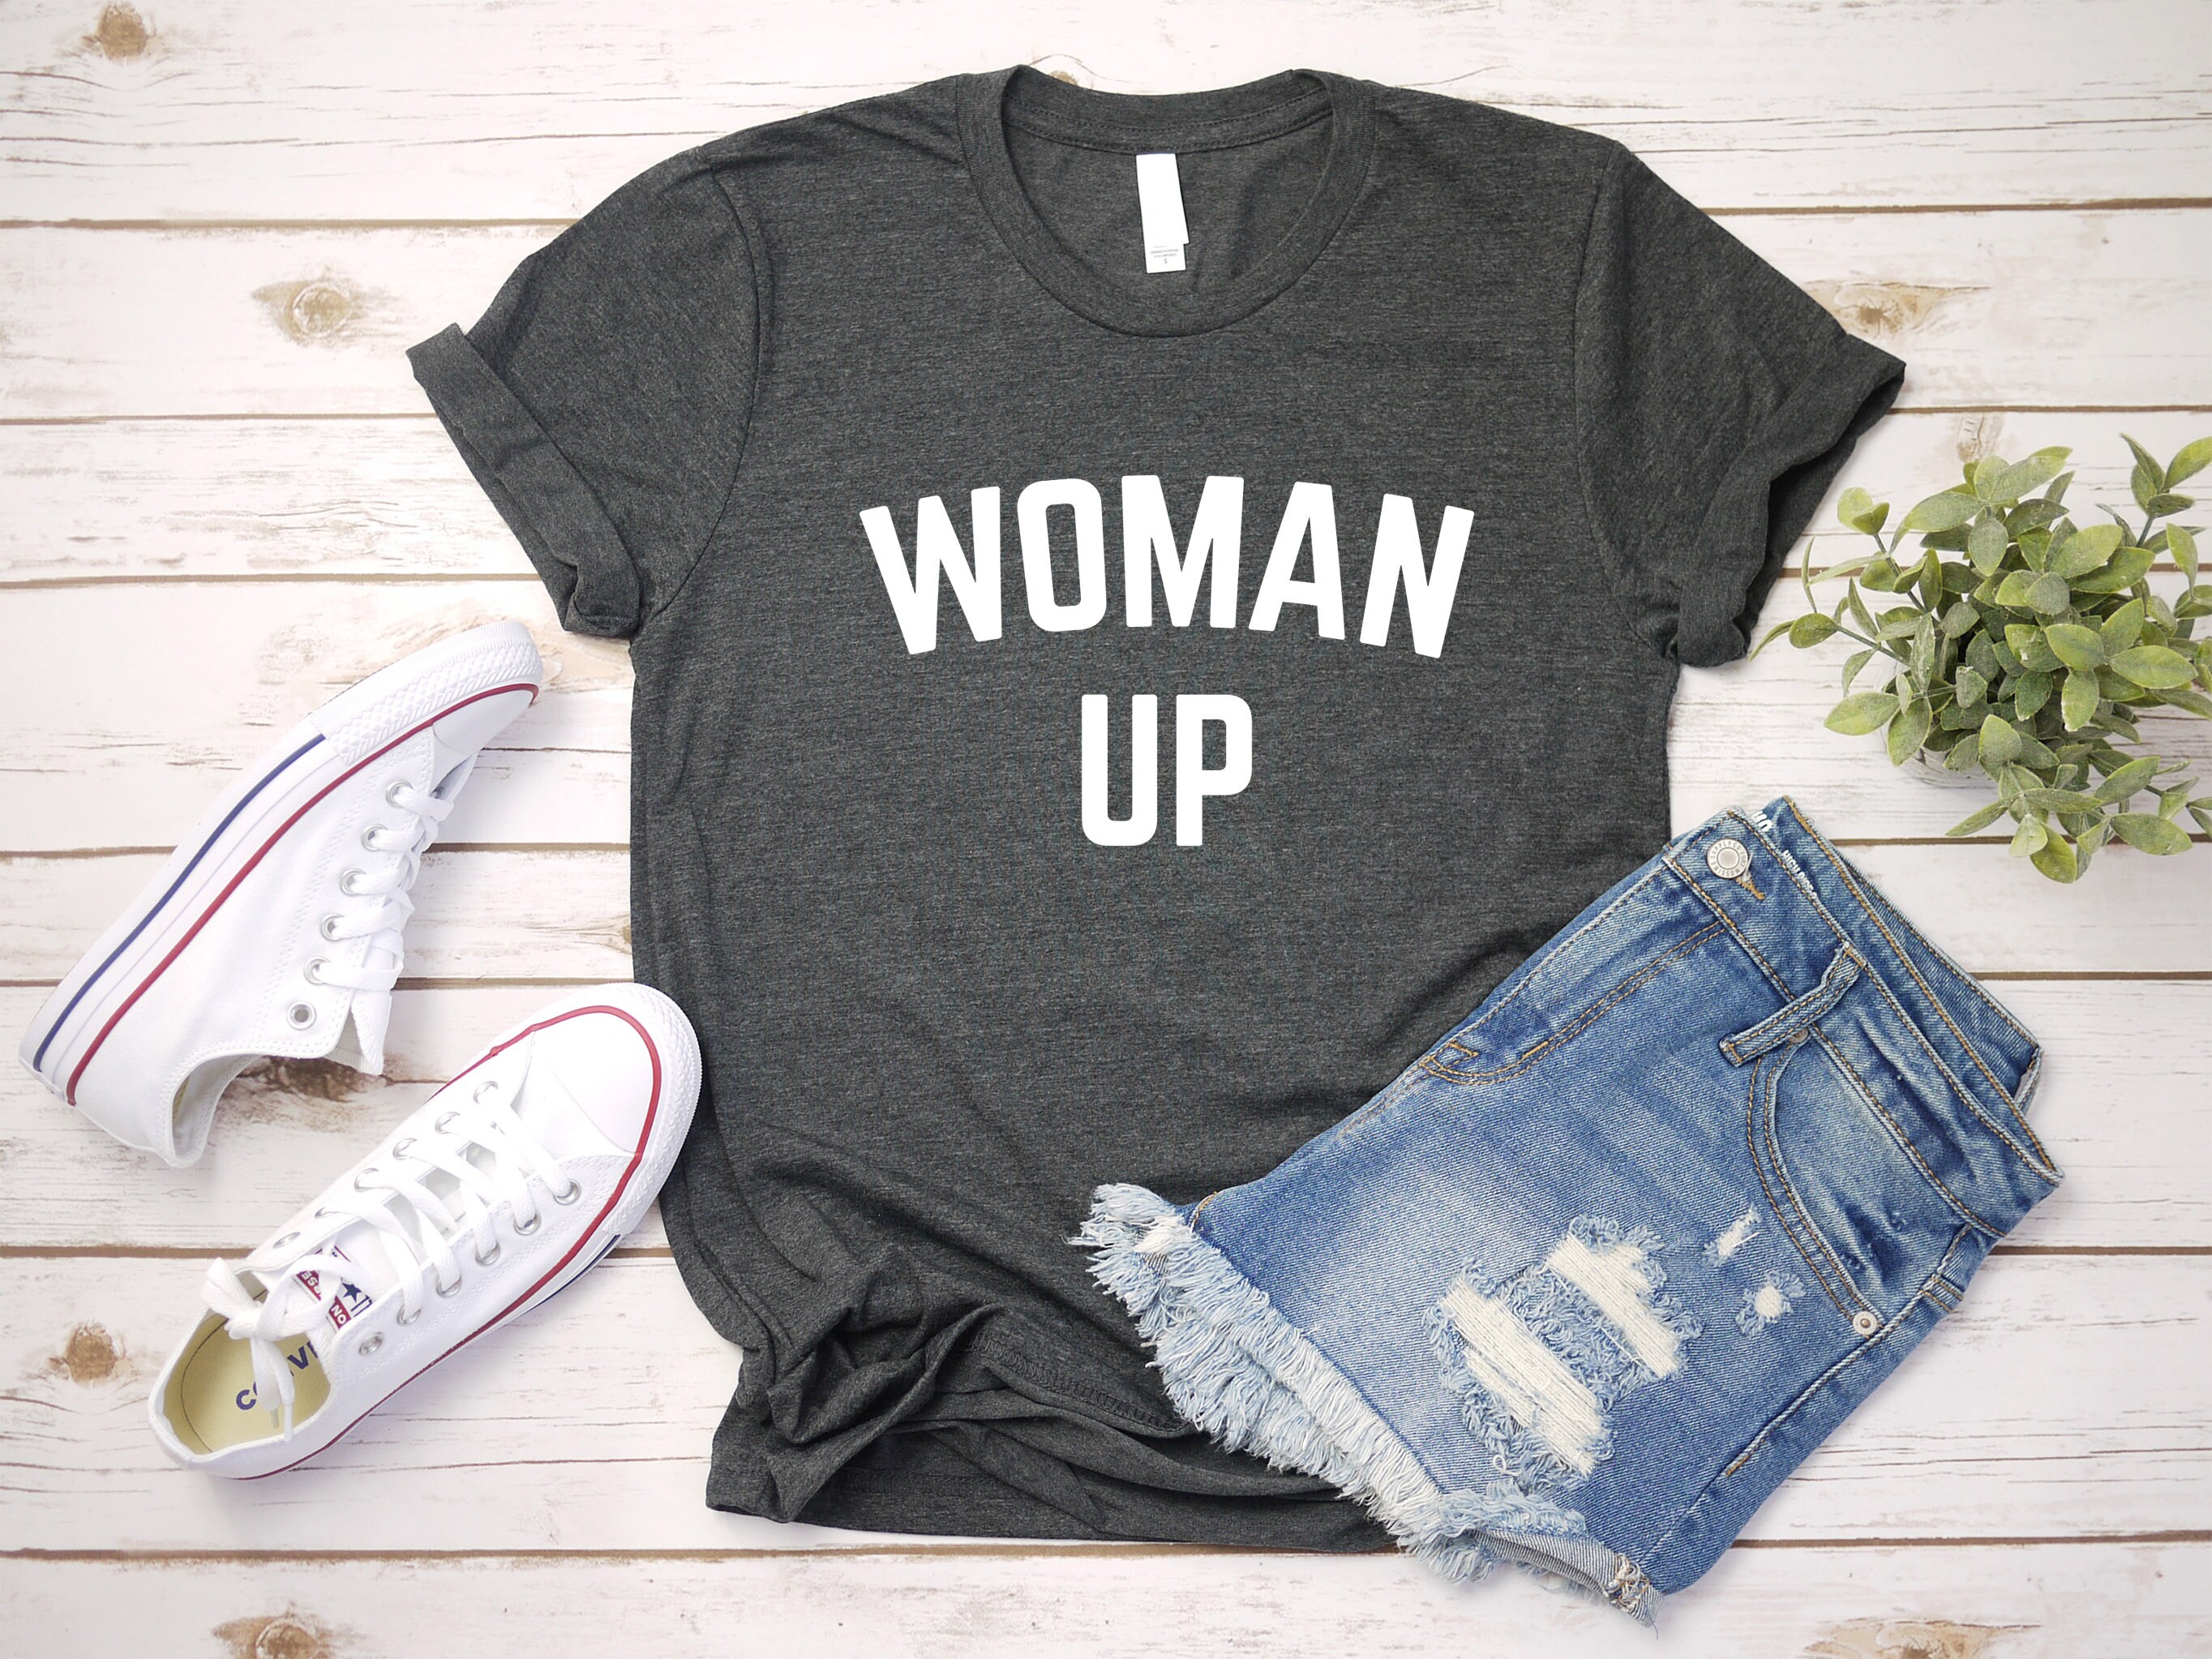 Discover Woman Up Shirt, Feminist Shirt, Women Empowerment, Women Up T Shirt, Motivational Shirt, Inspirational Shirt, Woman Up, Gift for Her